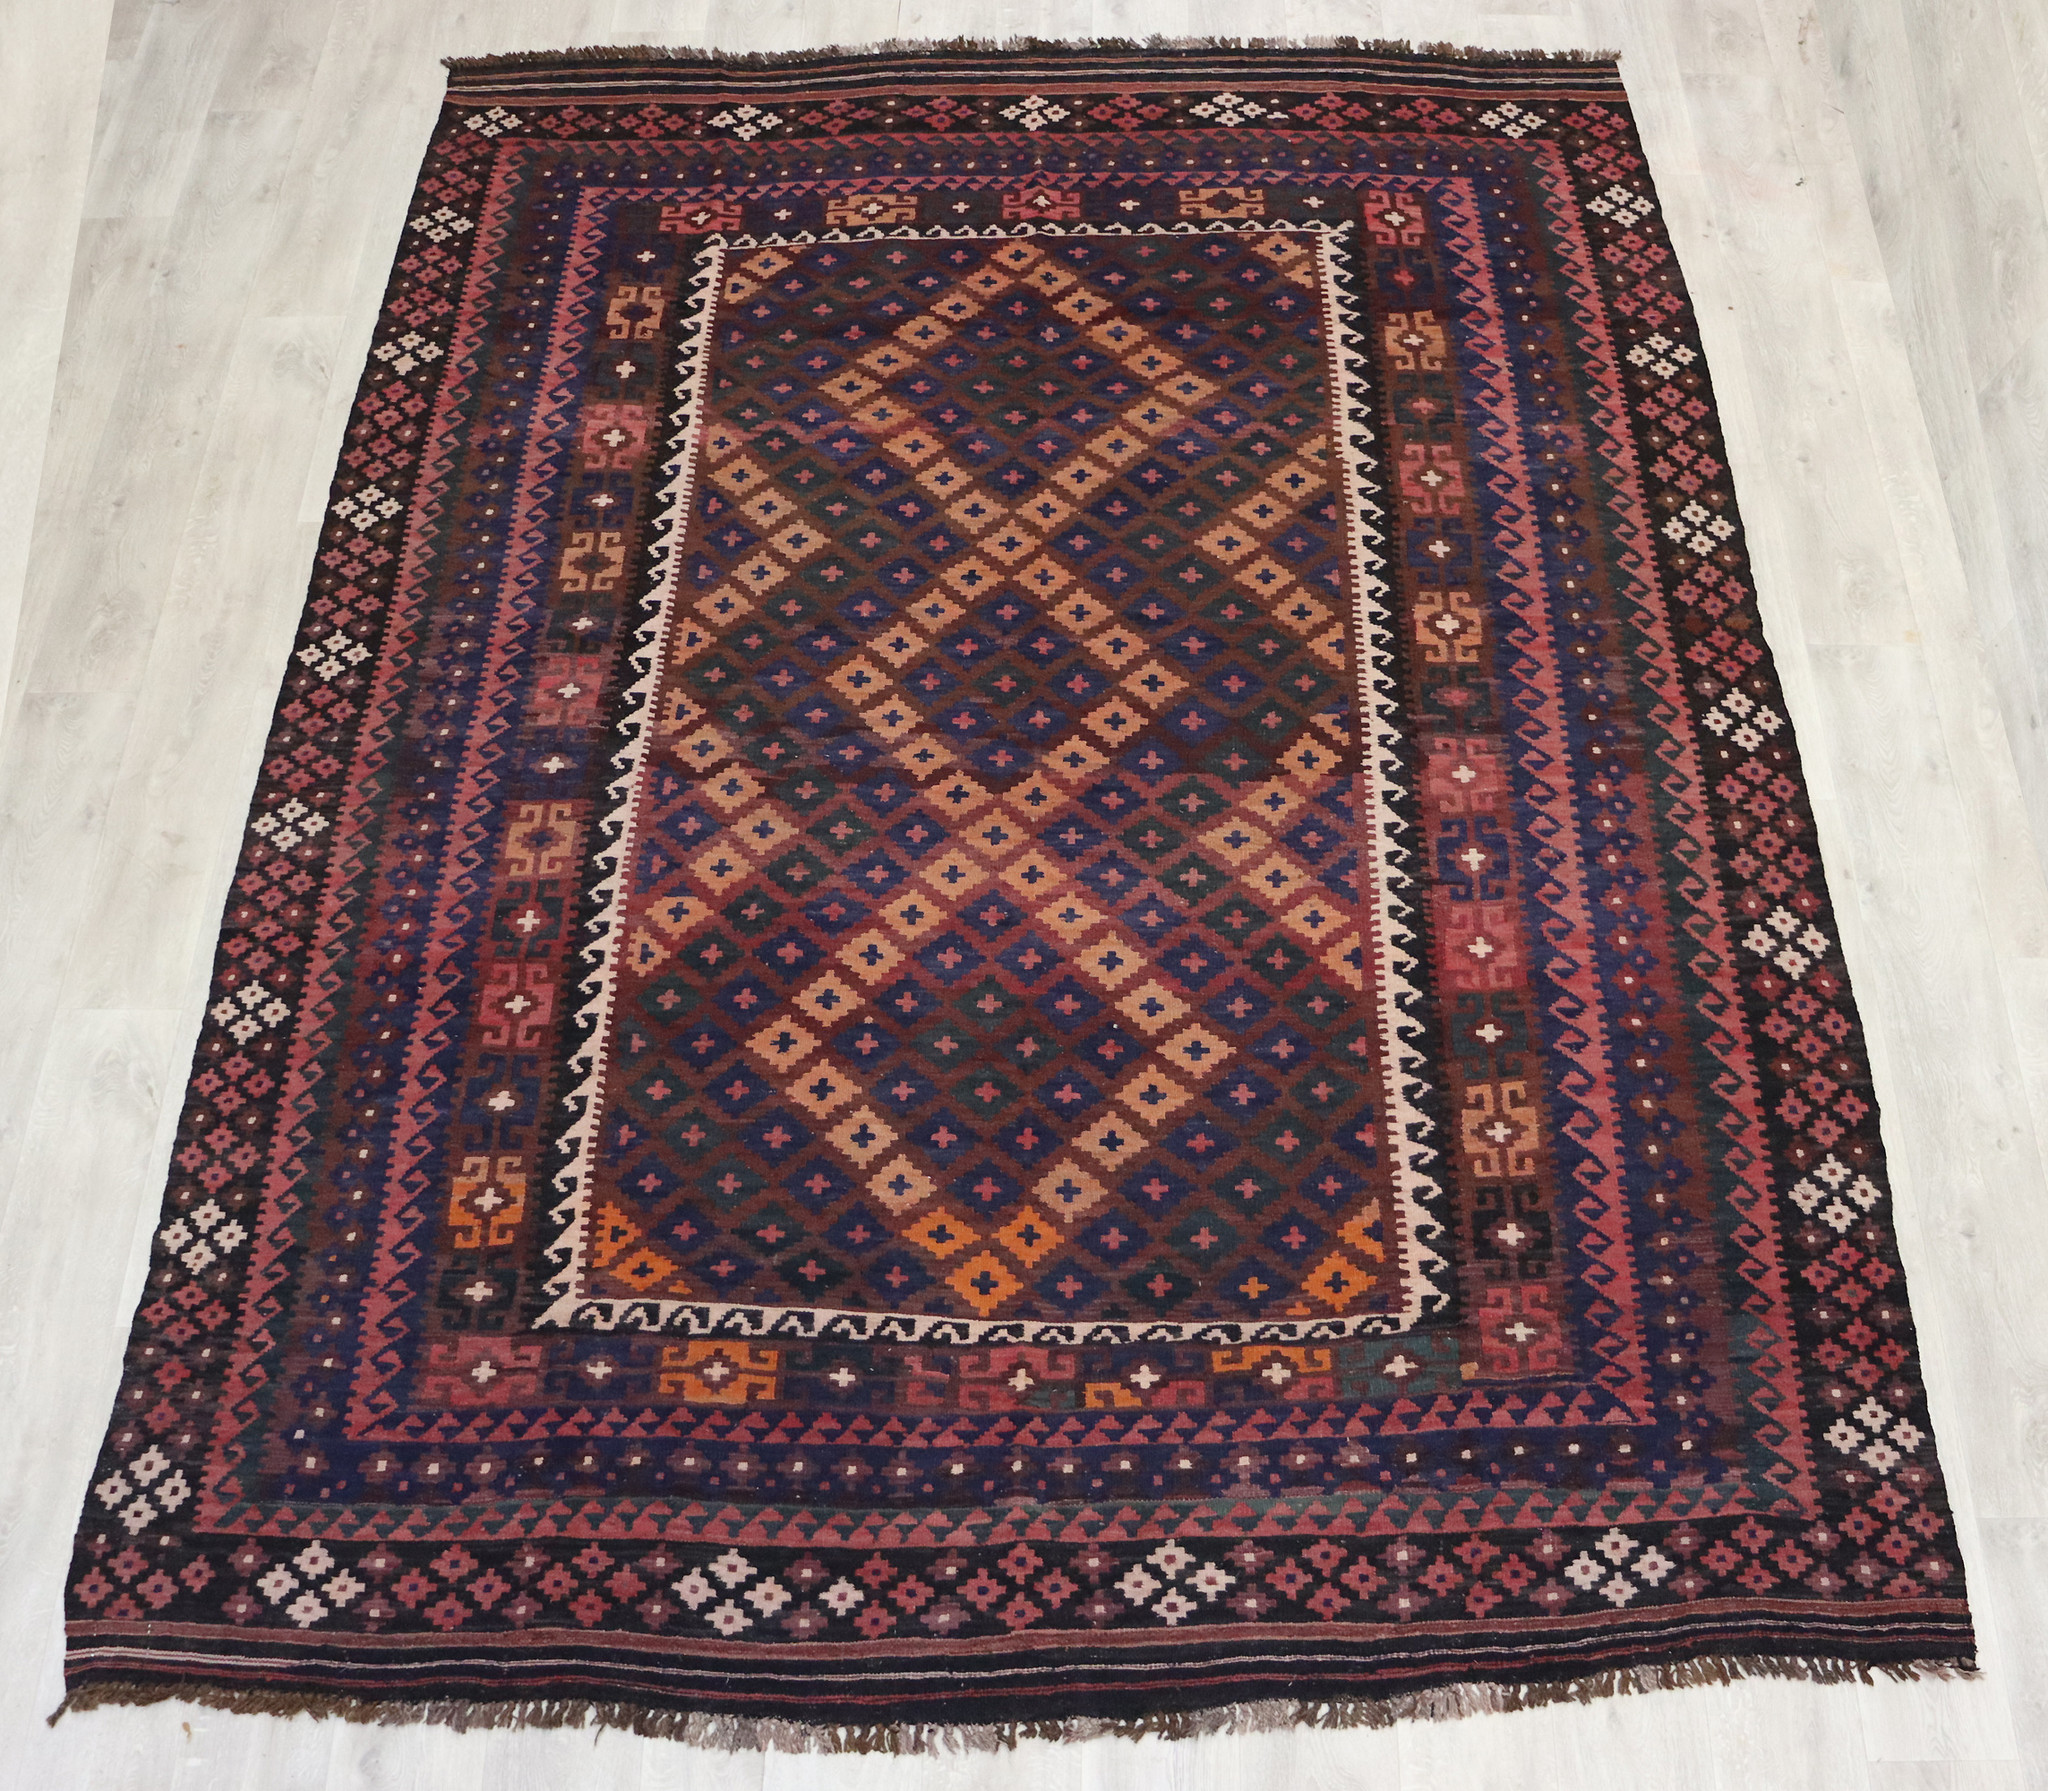 300x245     cm Afghan natural colors nomadic Kilim rug  No:  - 214